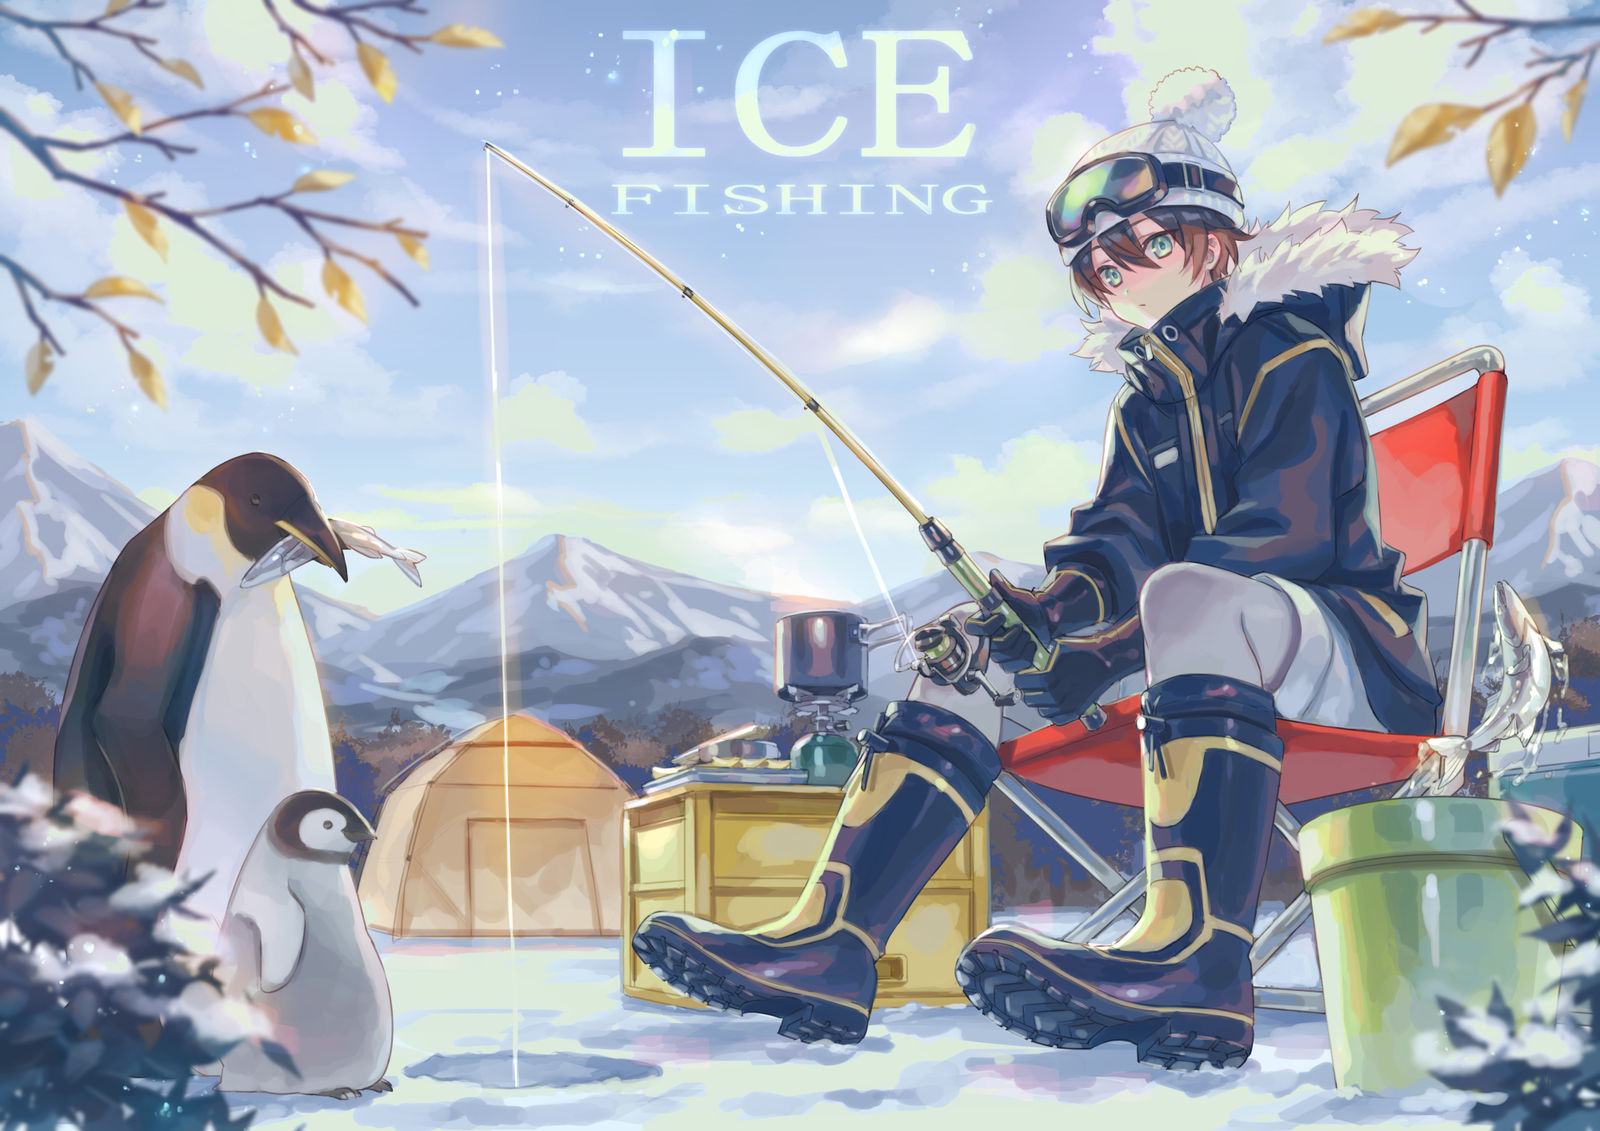 ICE fishing-ワカサギ釣り釣り